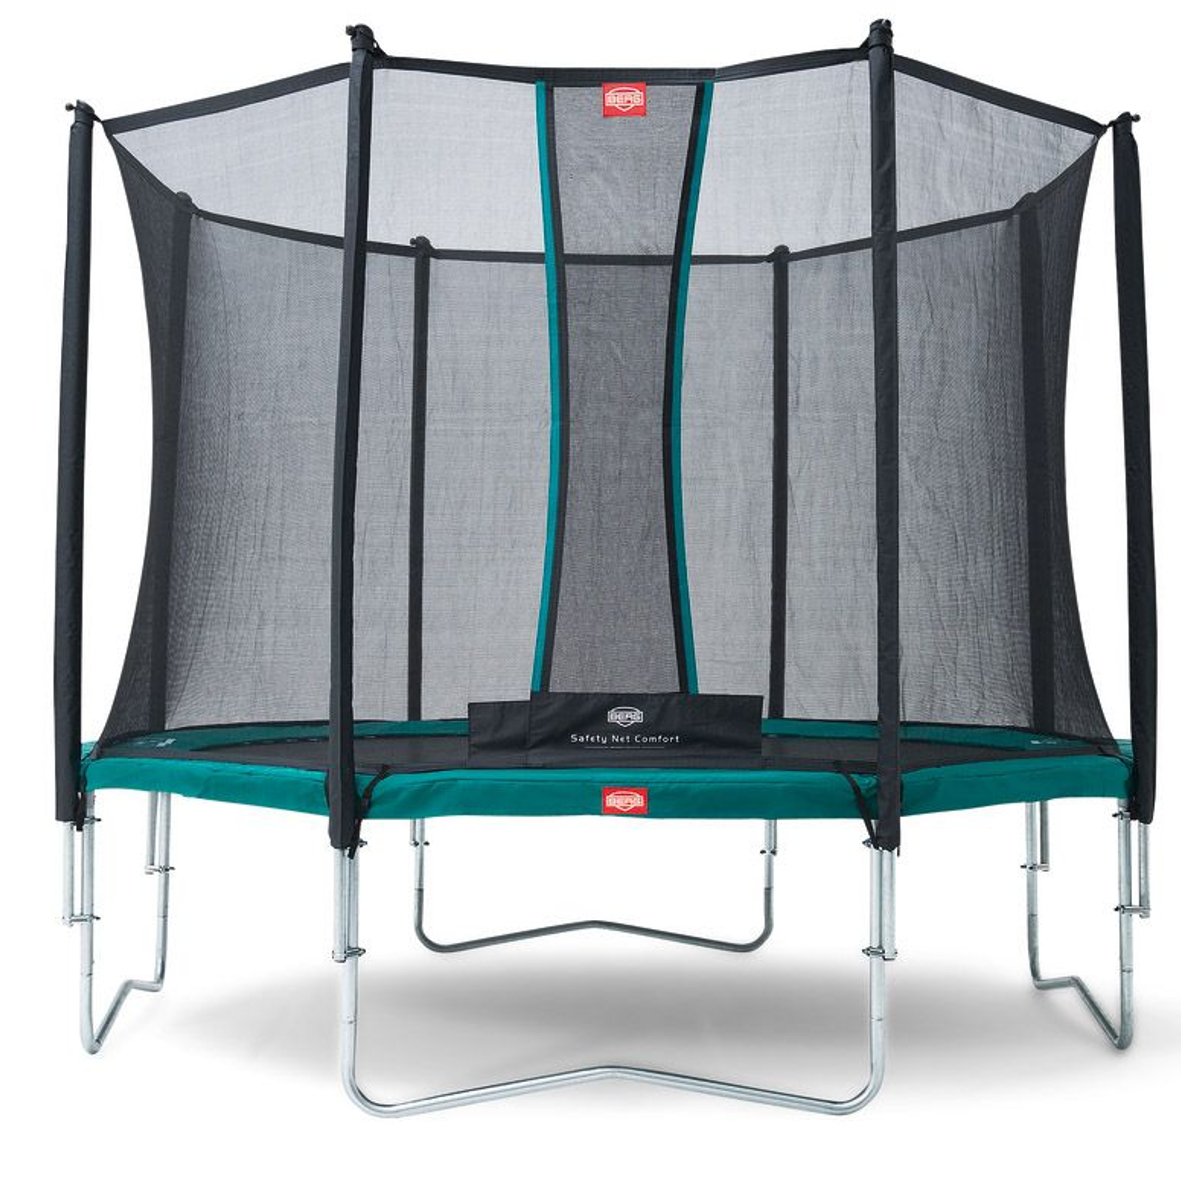 Berg Favorit Trampoline 380 + Safety Net Comfort